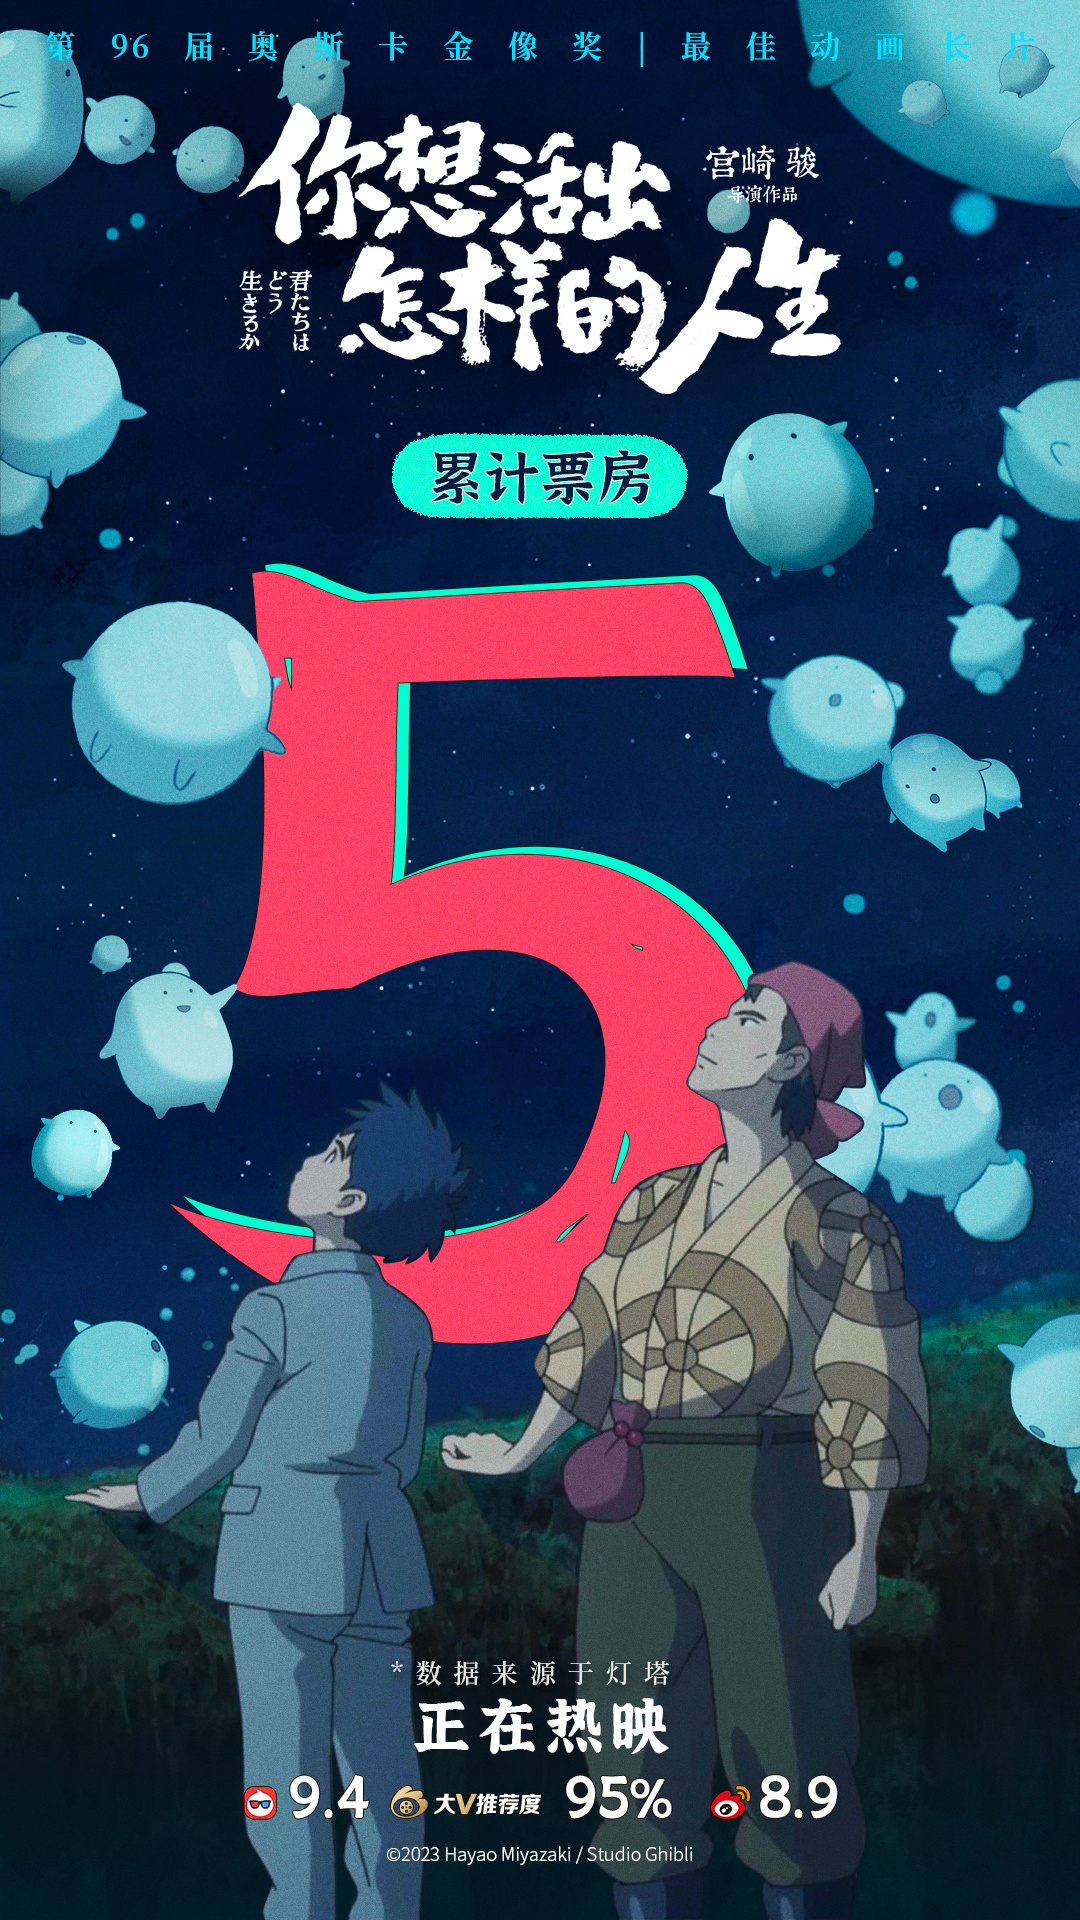 上映5天 宫崎骏电影《你想活出怎样的人生》国内票房突破5亿